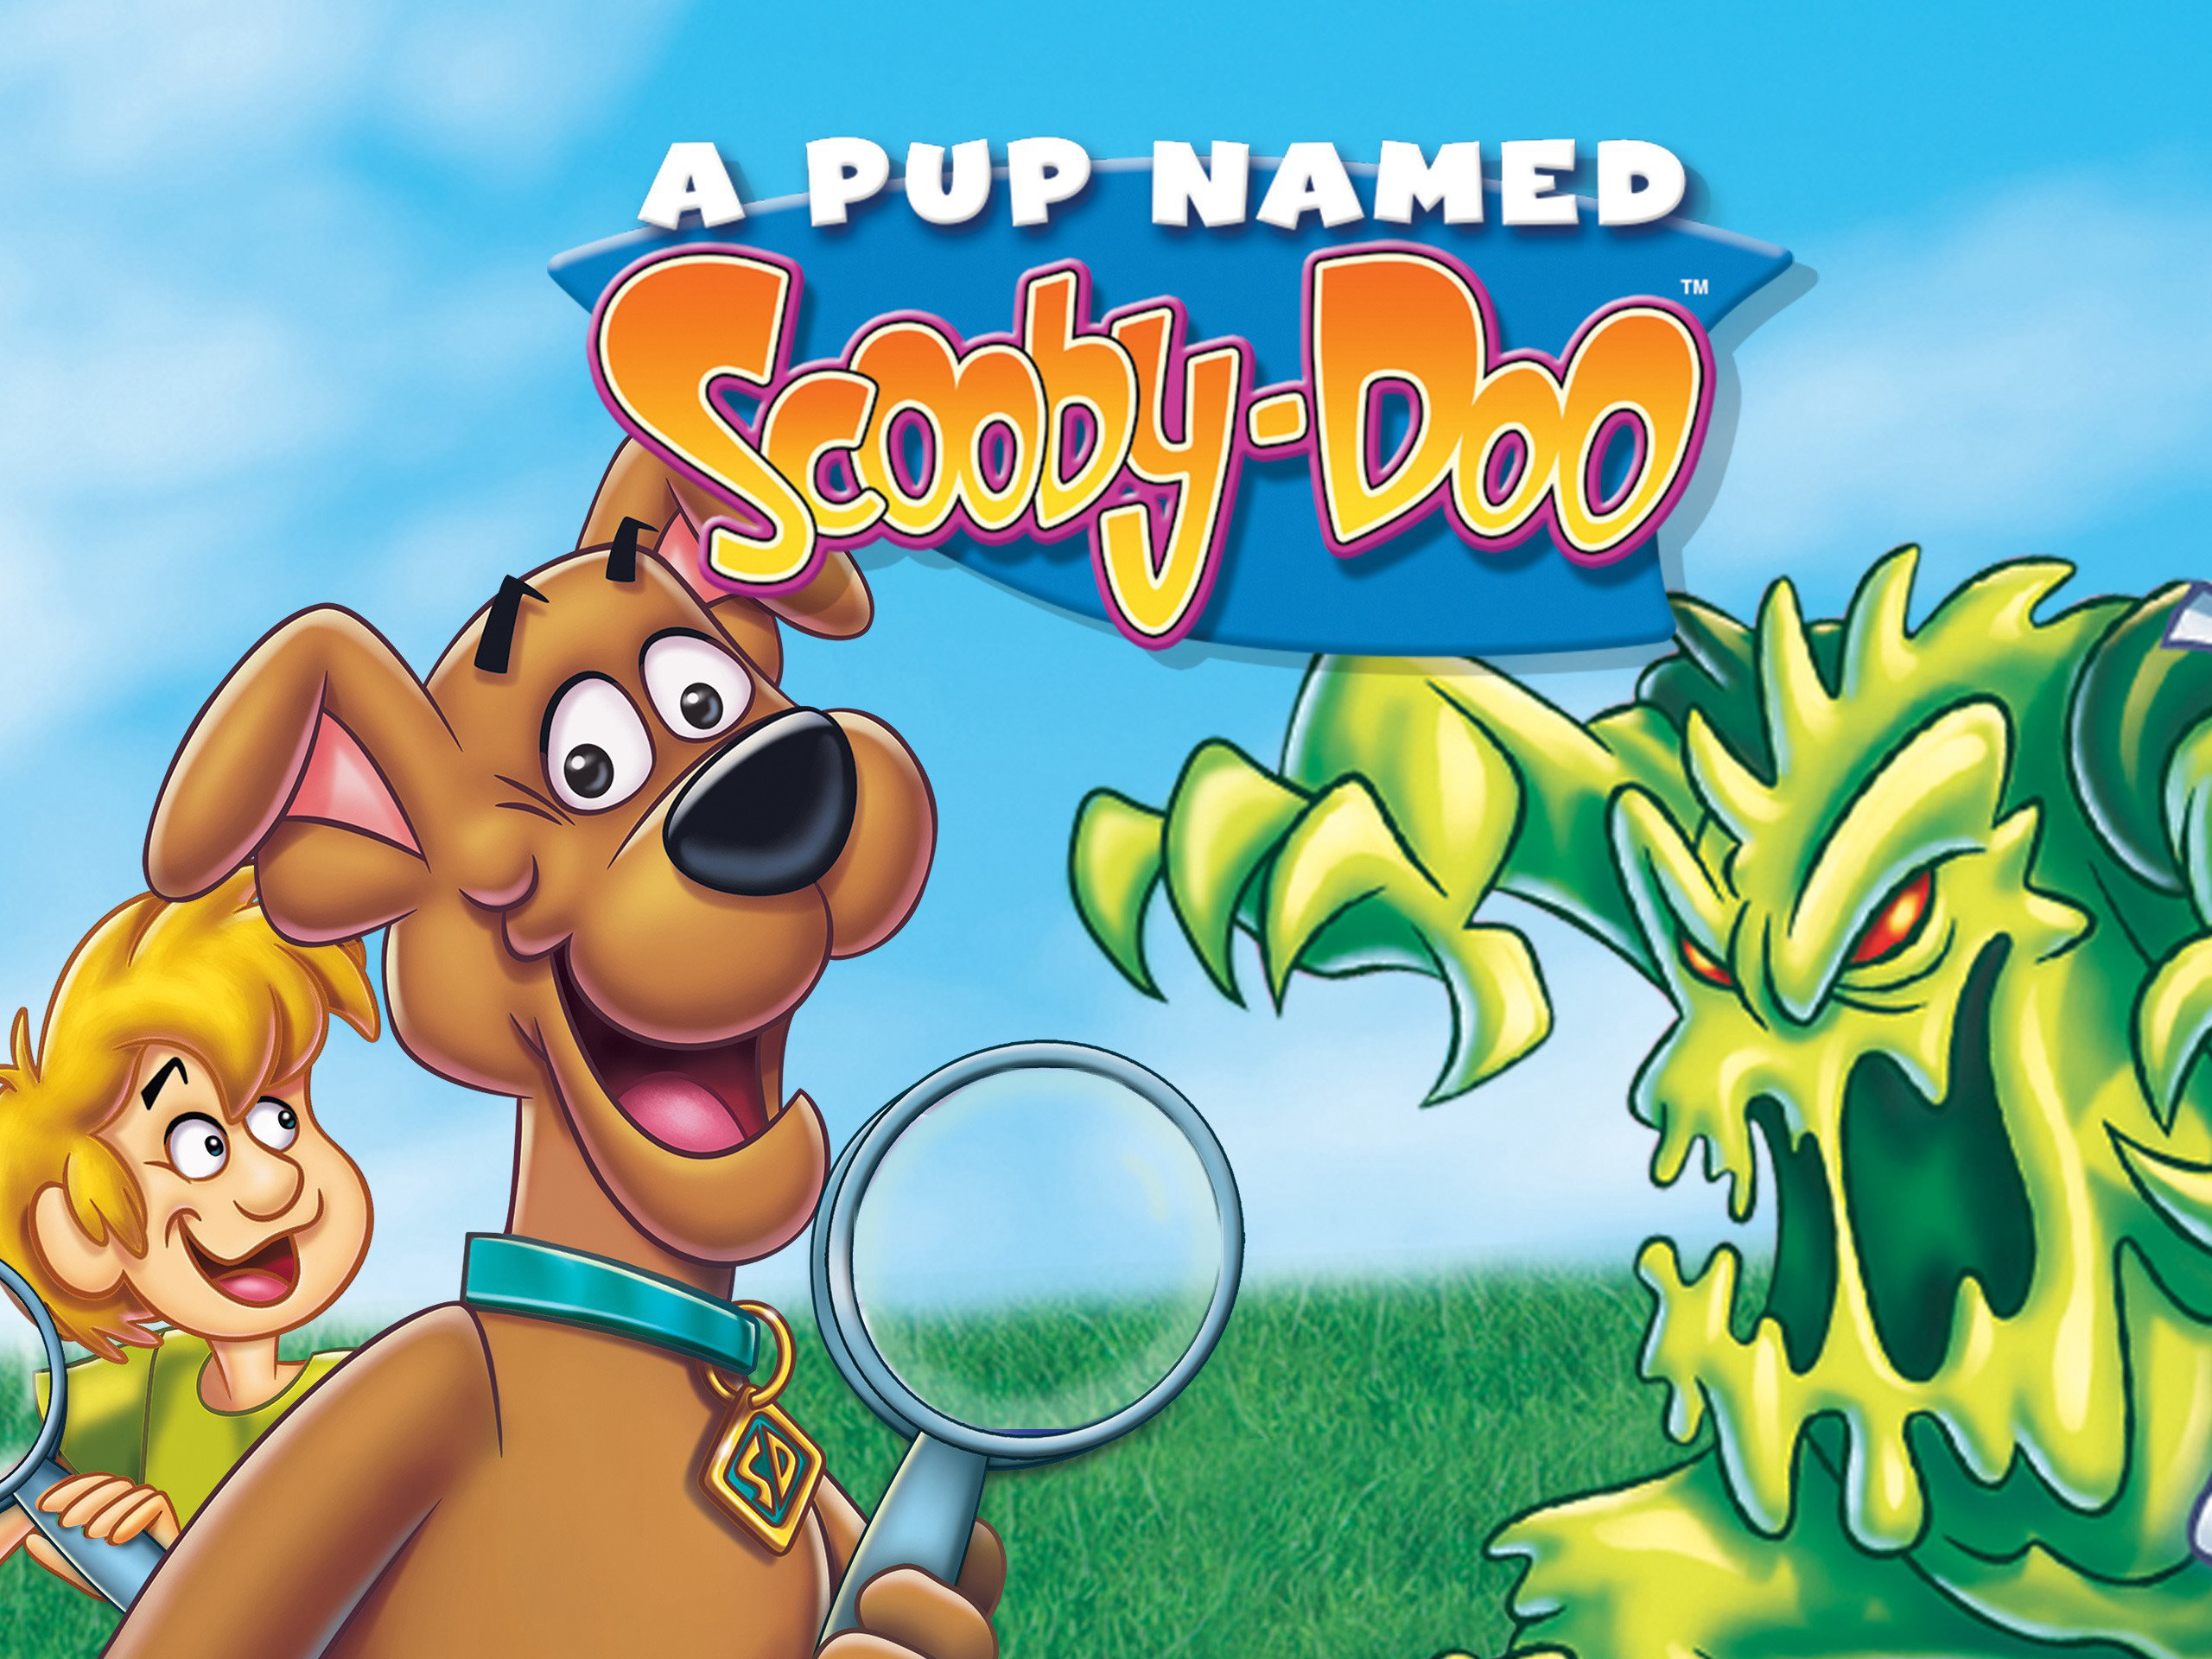 A Pup Named Scooby-Doo (Season 3) / A Pup Named Scooby-Doo (Season 3) (1990)